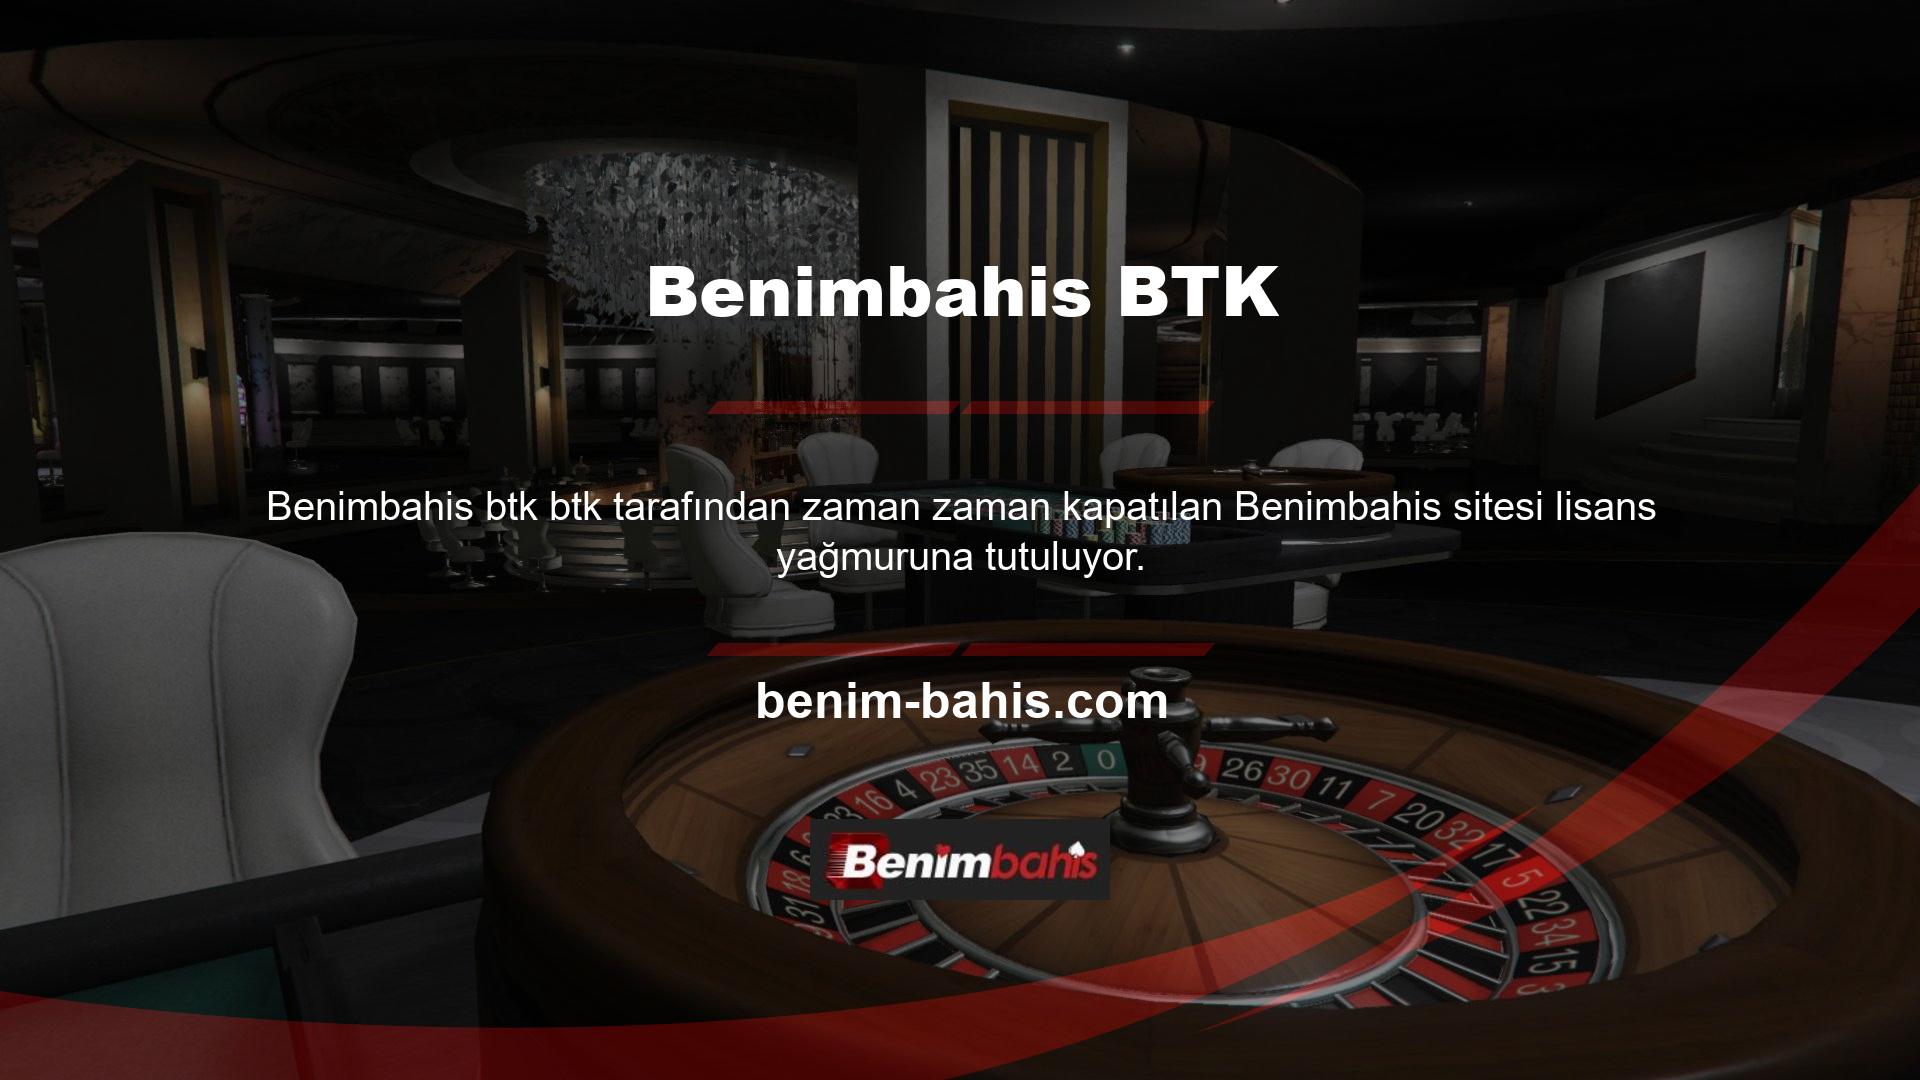 Türkiye'de casino sitelerinin işletilmesi yasa dışıdır